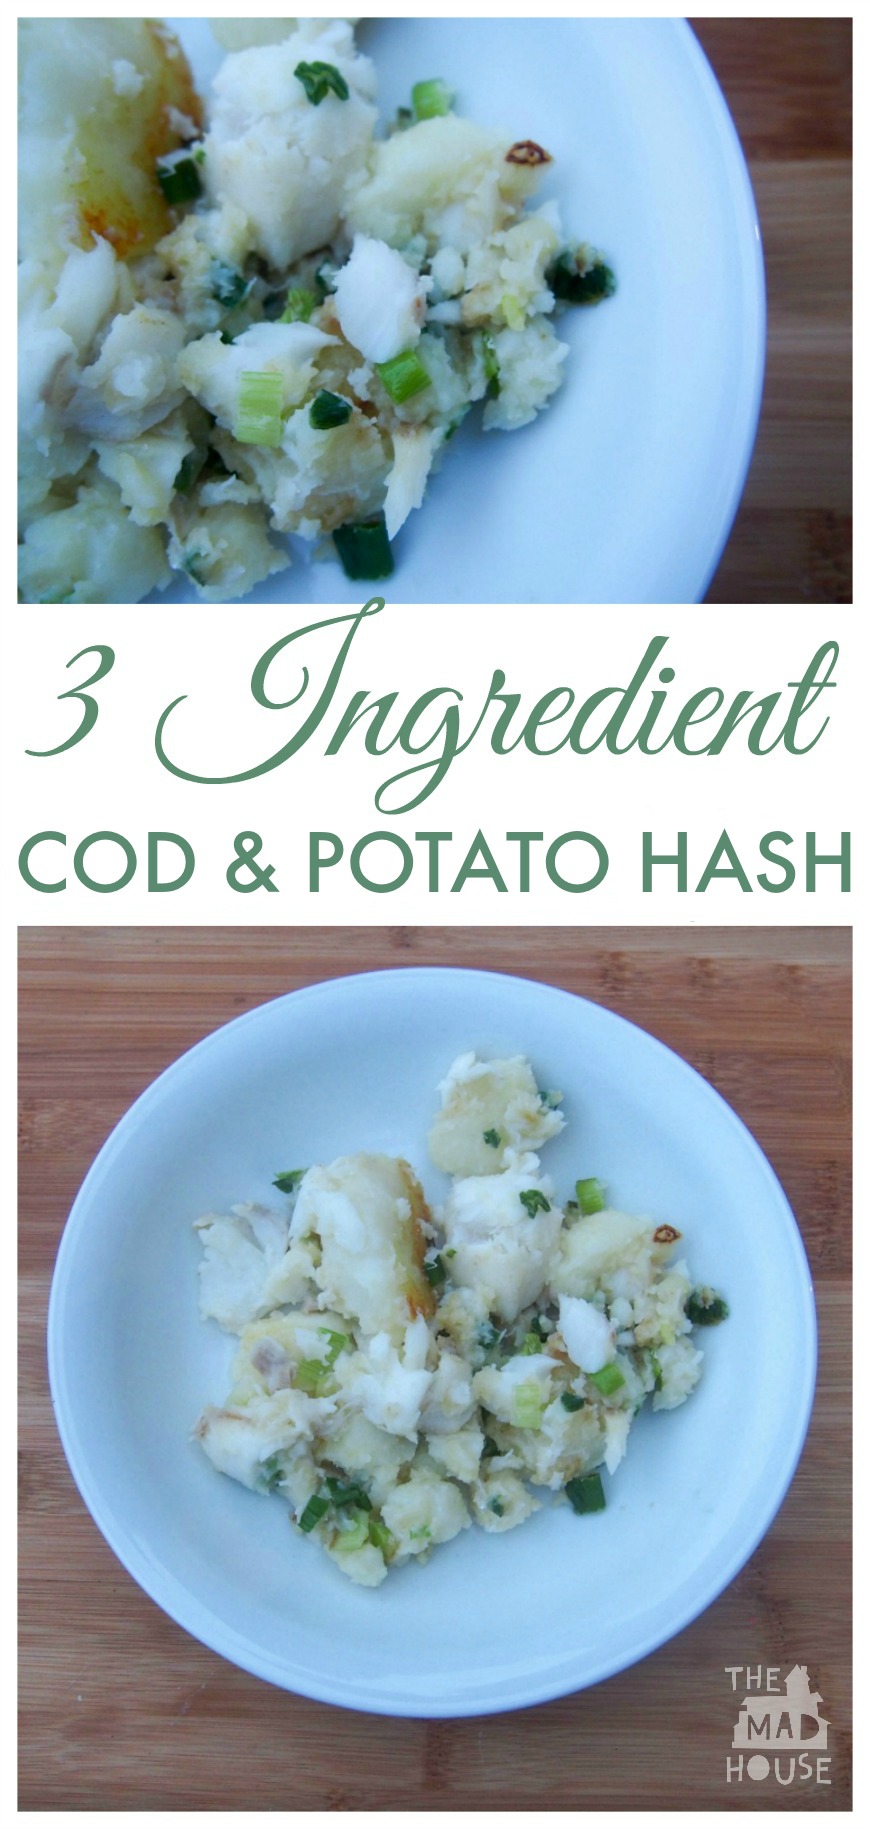 Cod and Potato Hash